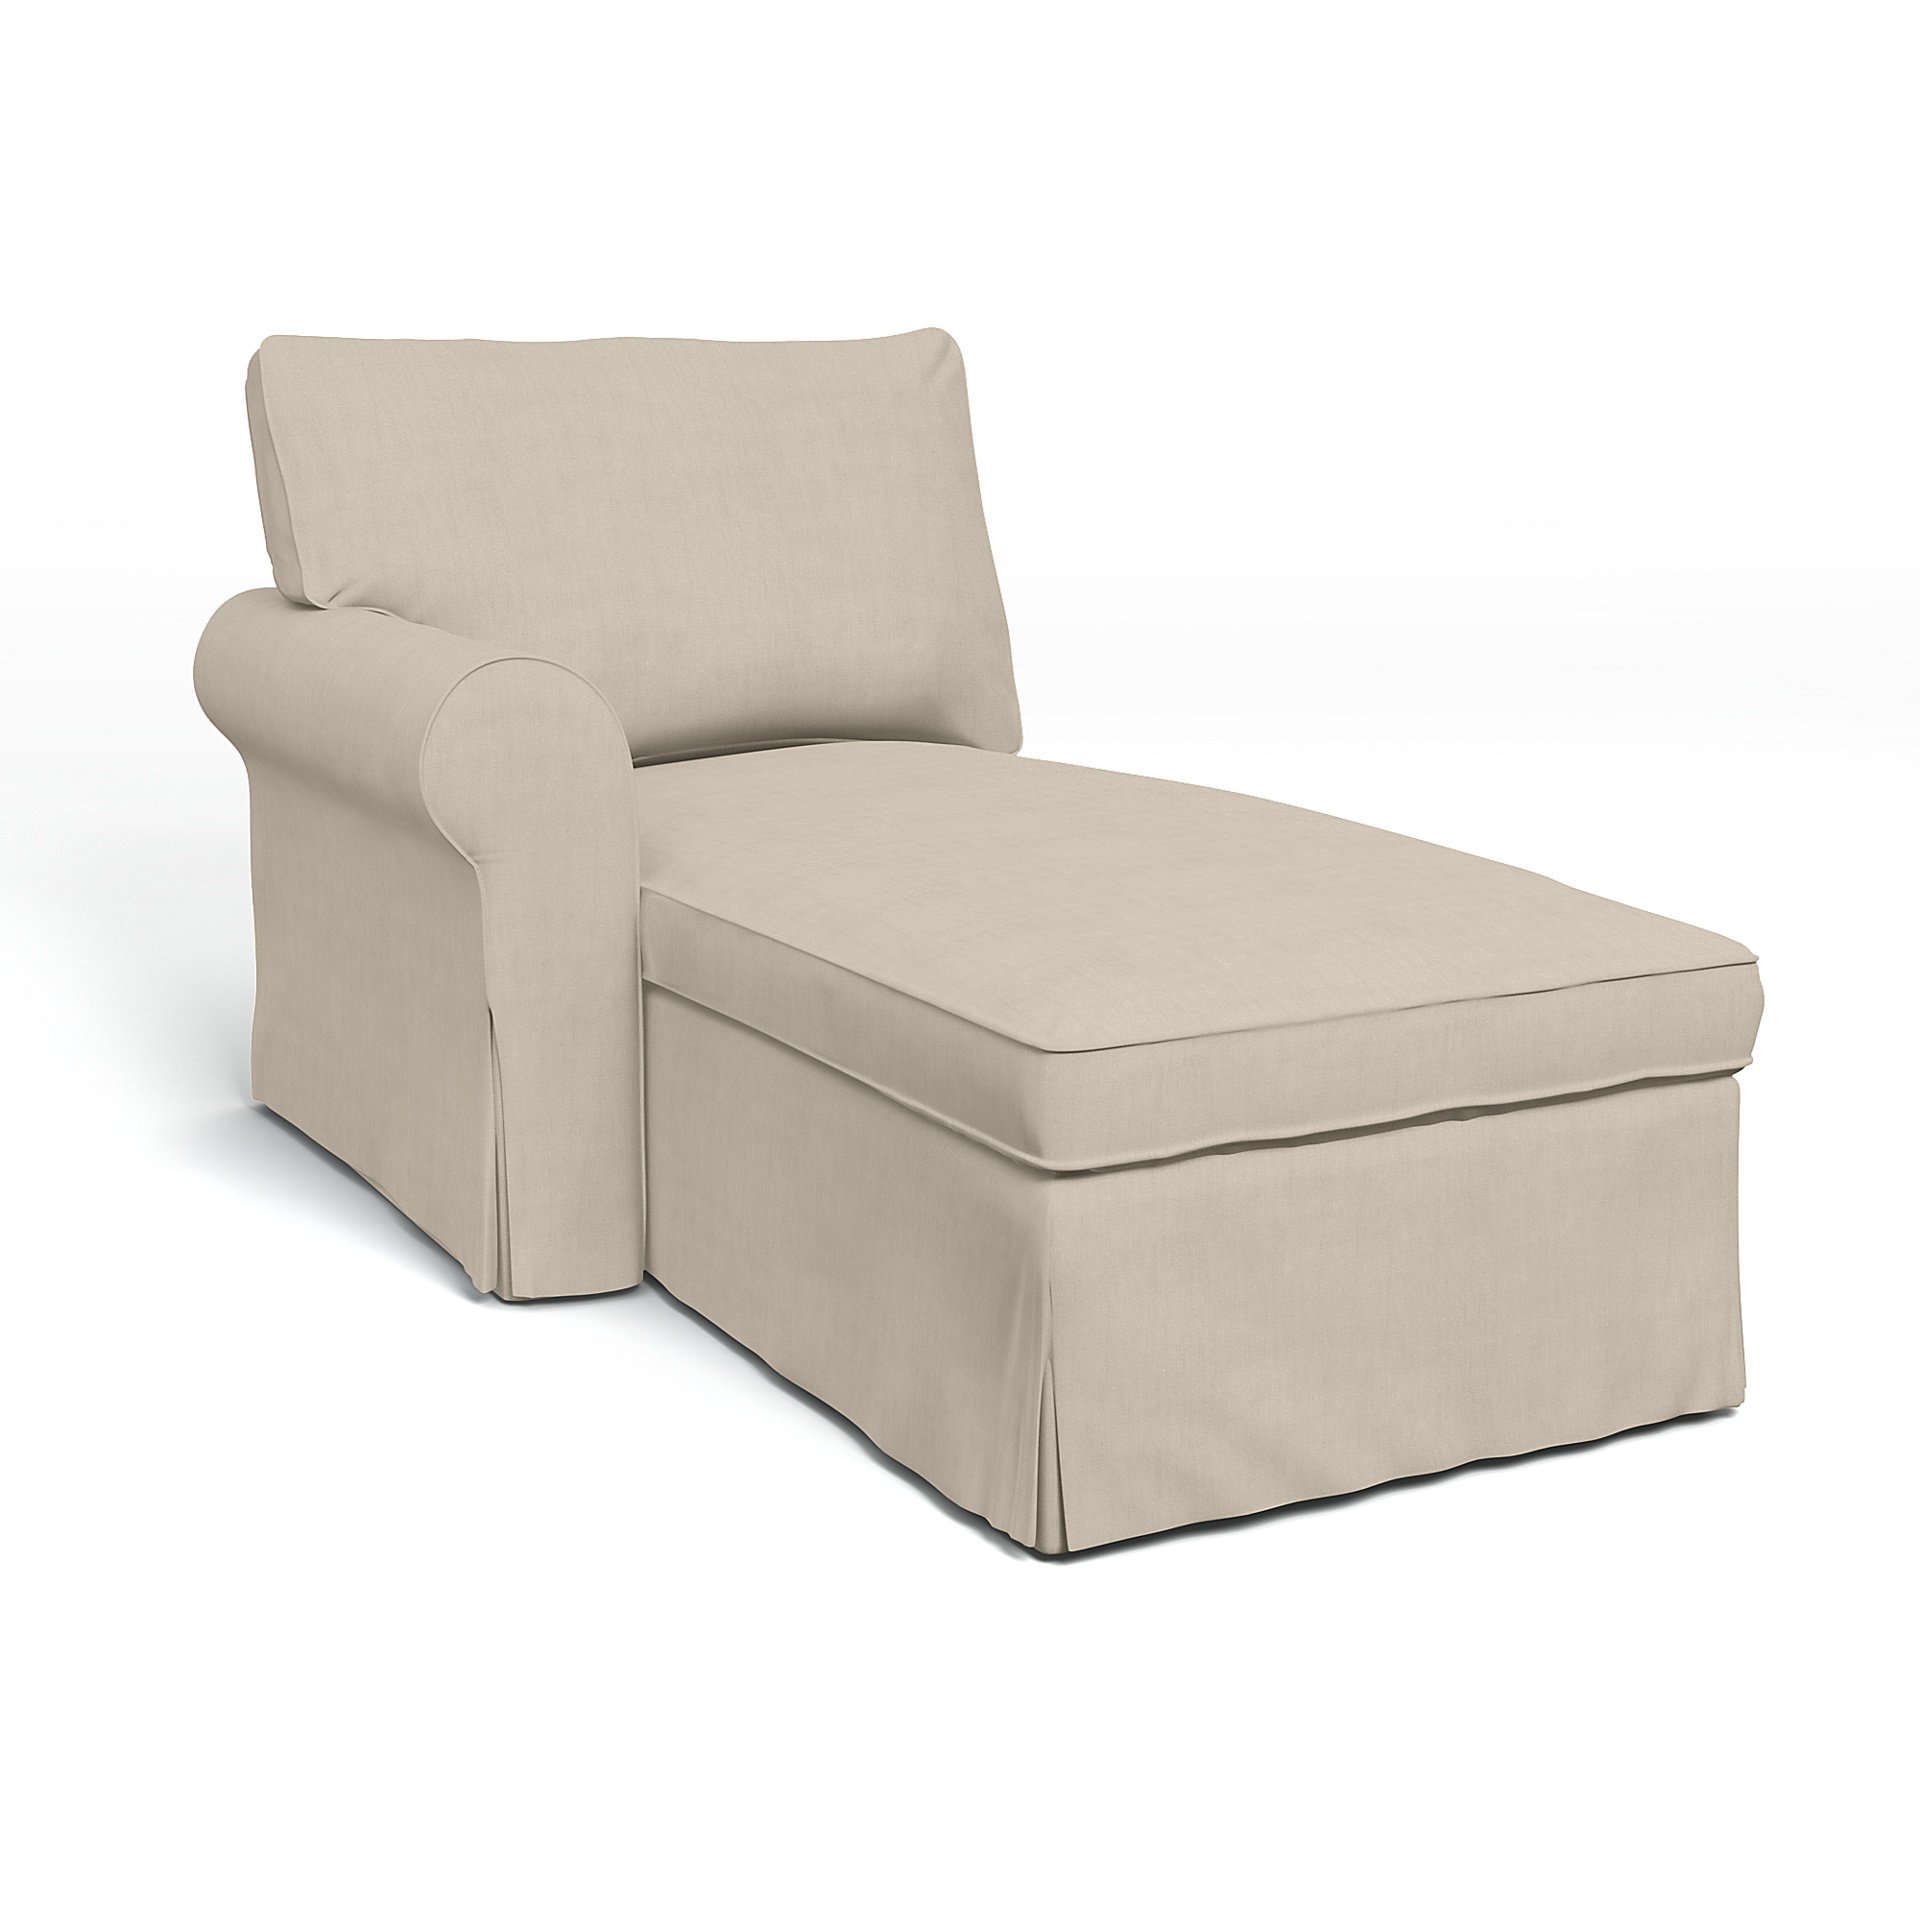 IKEA - Ektorp Chaise with Left Armrest Cover, Parchment, Linen - Bemz